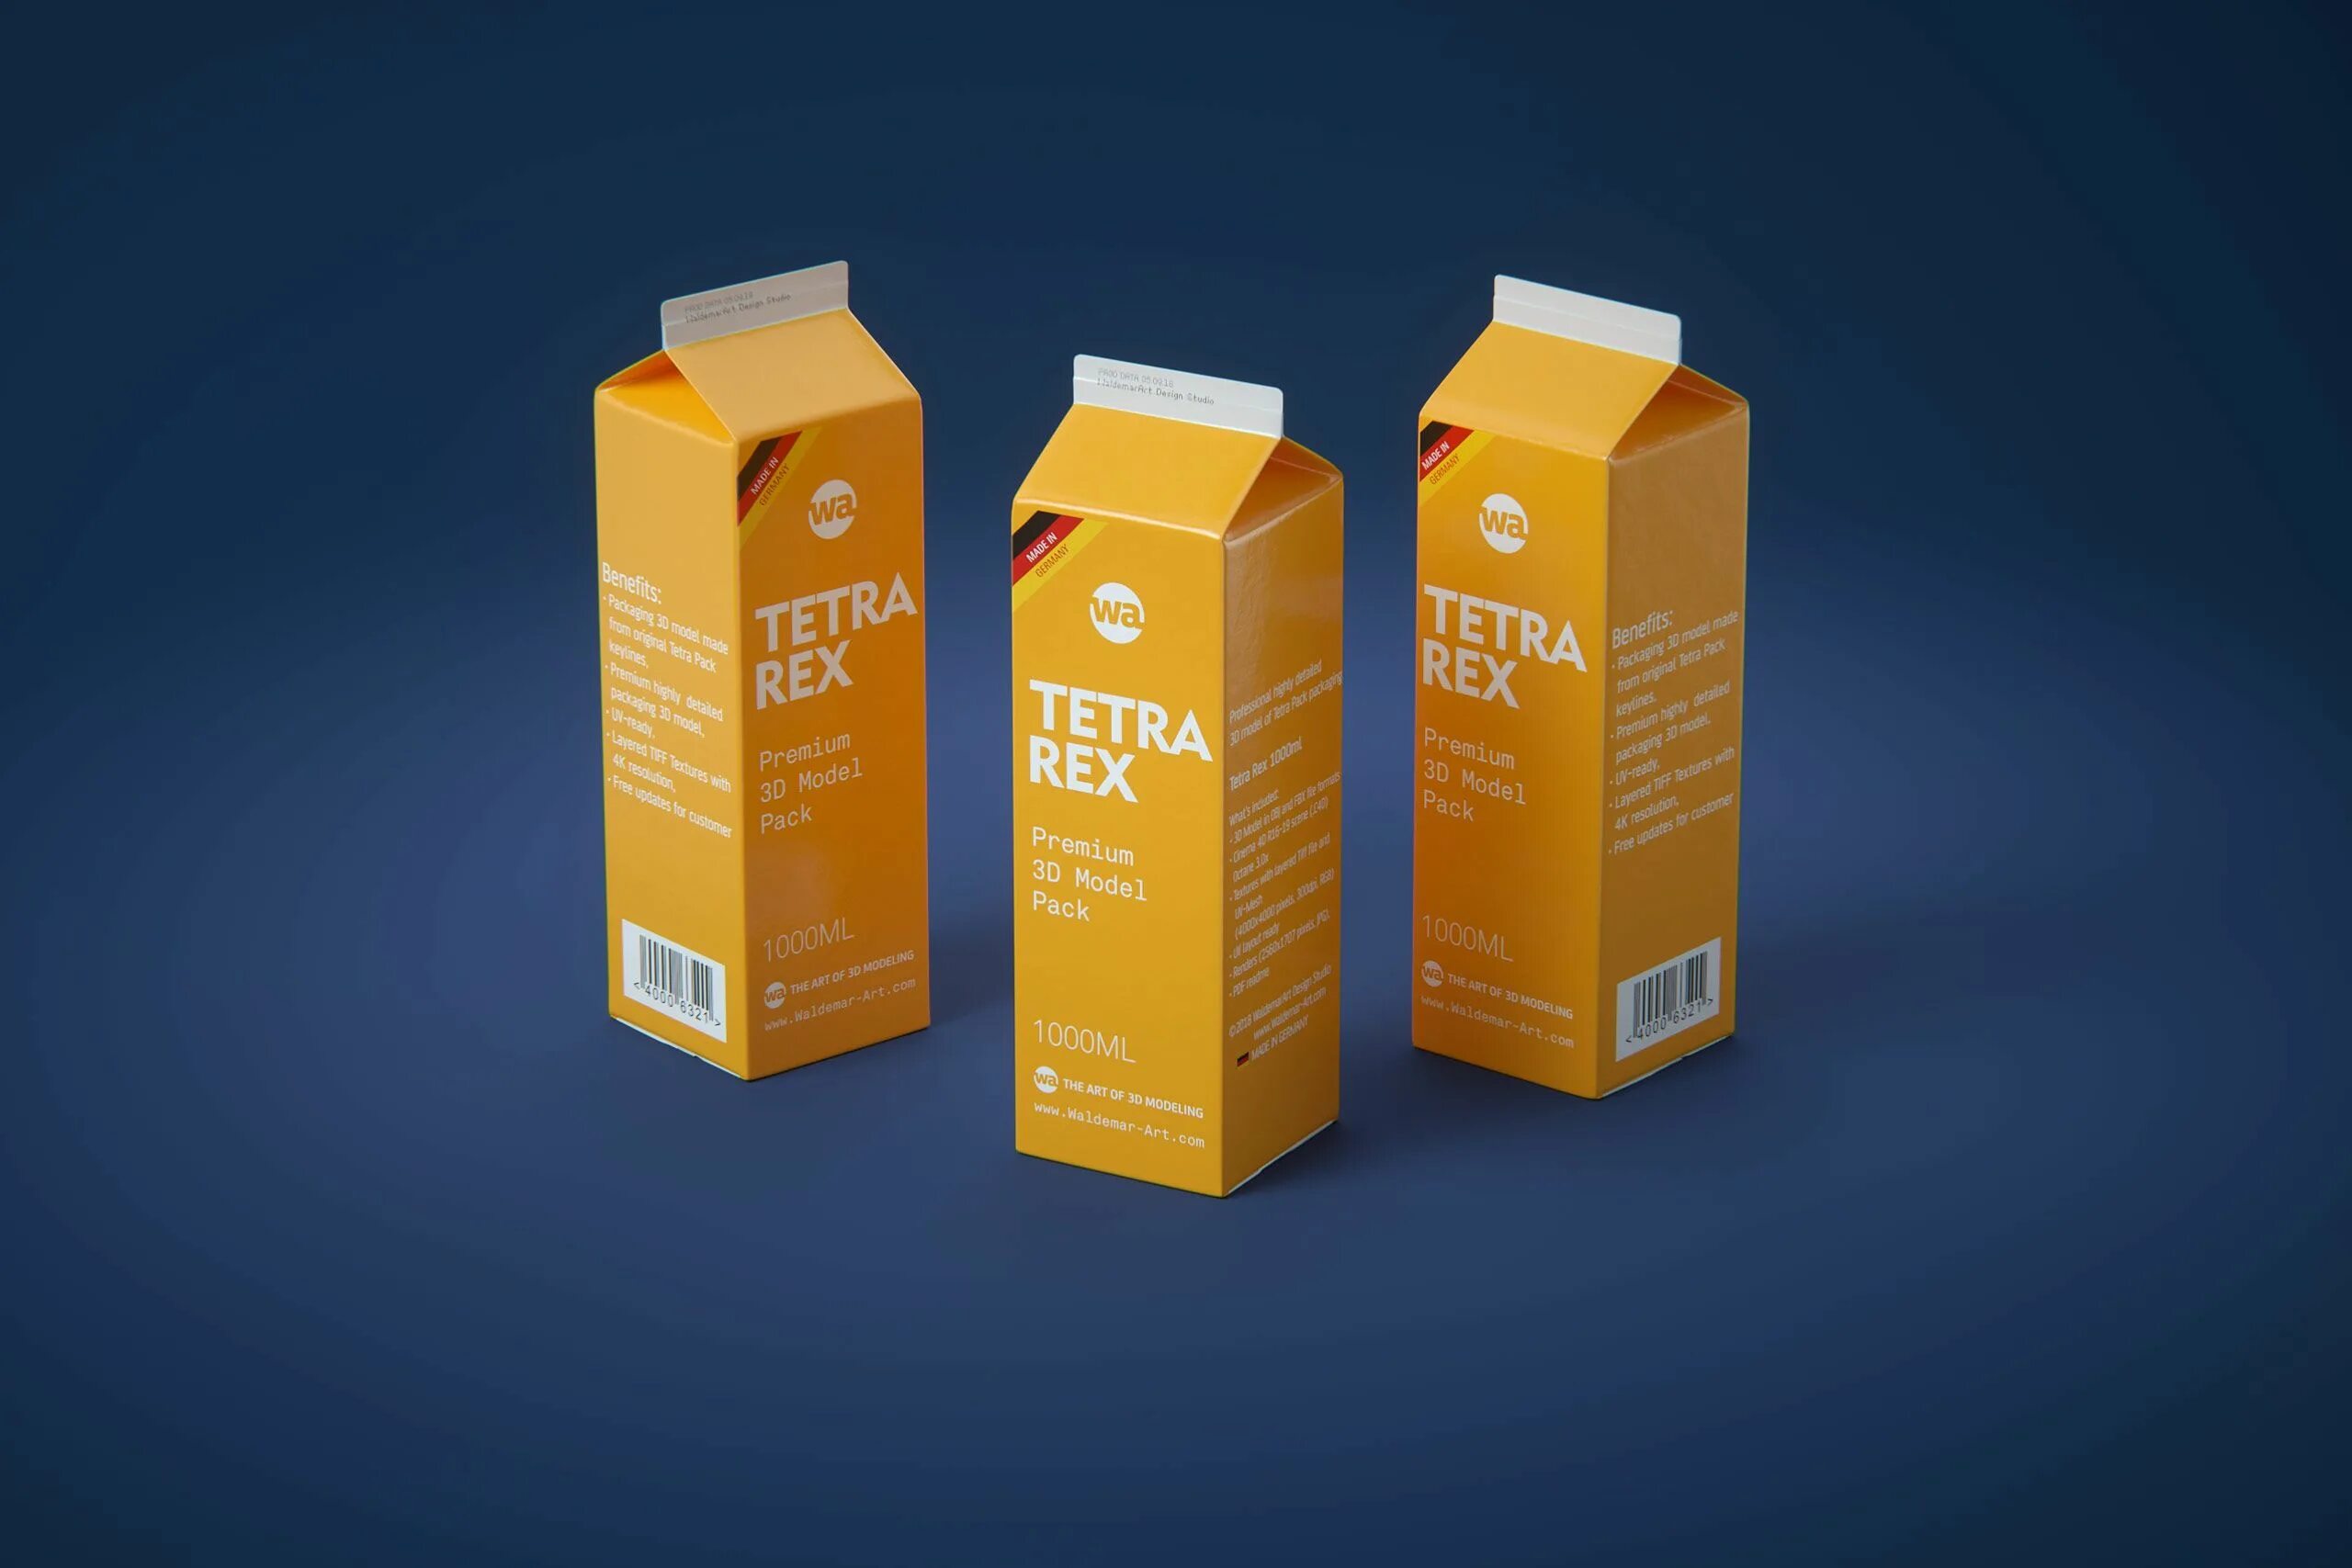 Пакеты тетра пак. Tetra Pak Tetra Rex. Тетра рекс упаковка. 3d модель Tetra Pack 1l. Молоко в упаковке тетра пак.